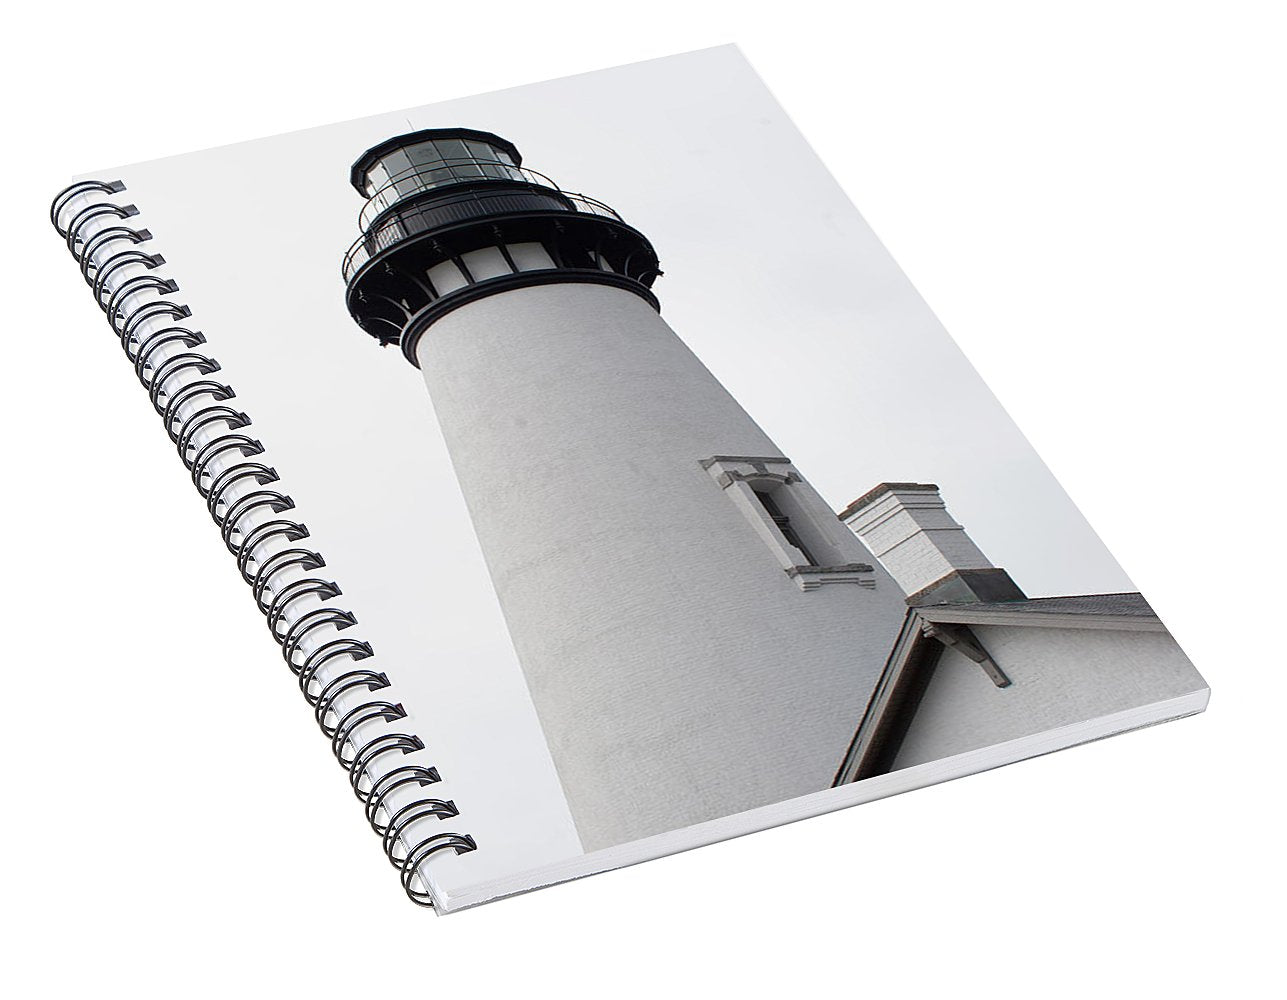 Light House - Spiral Notebook